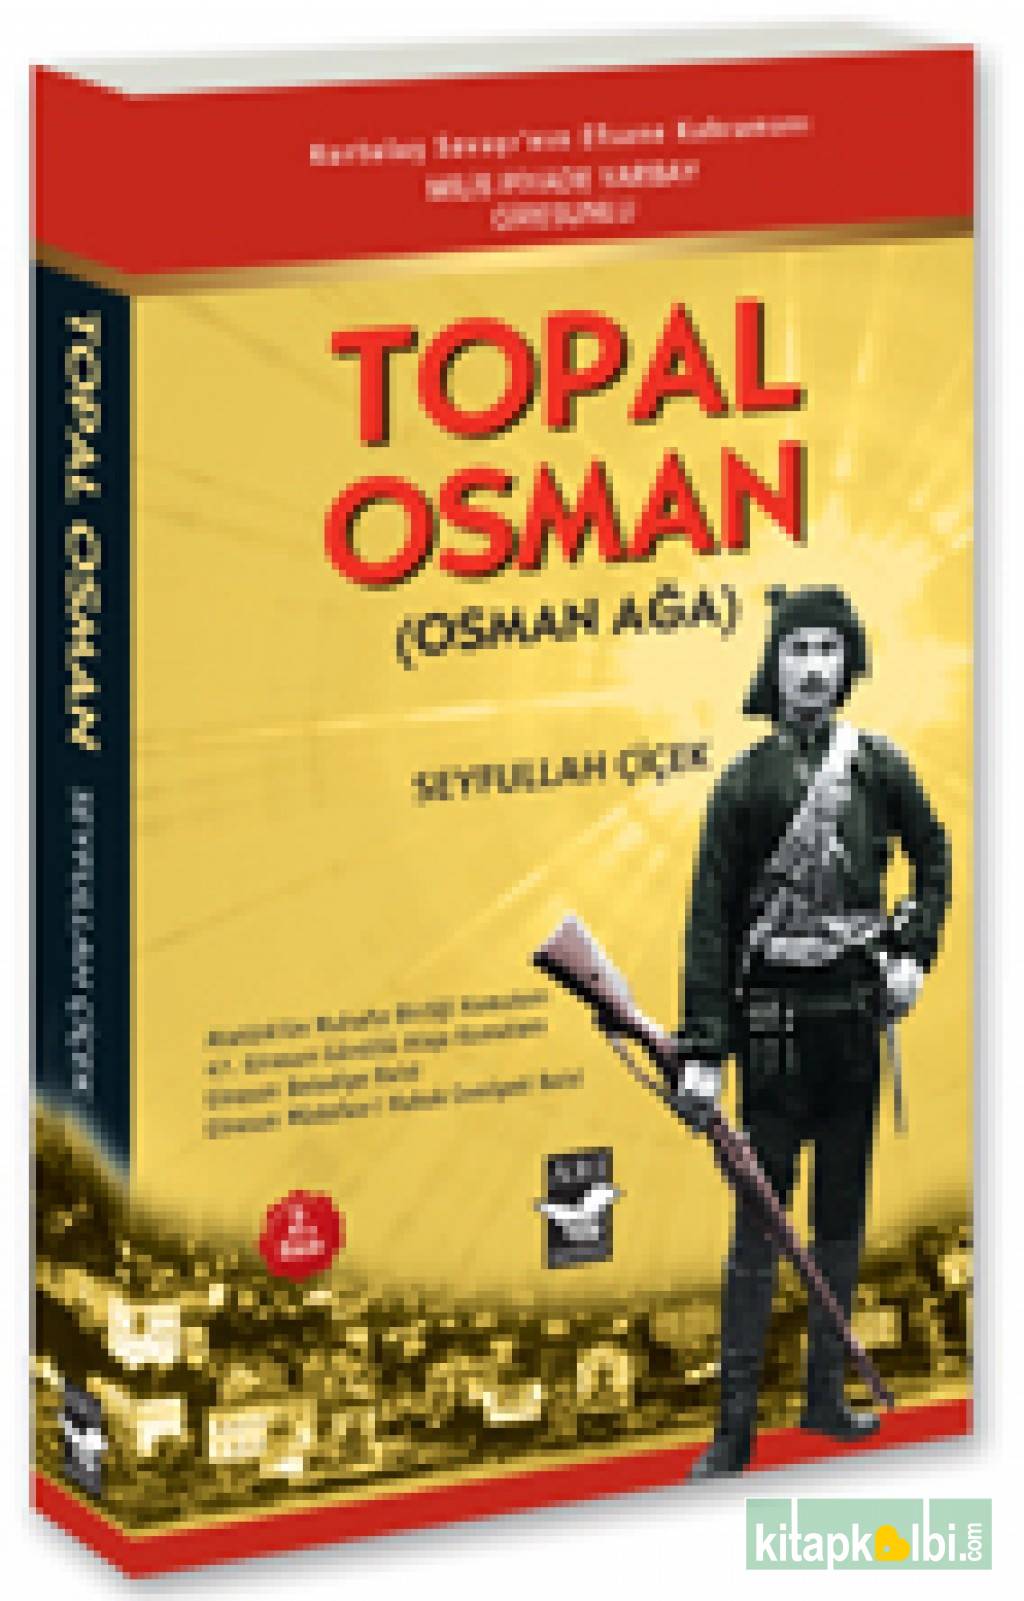 Topal Osman (Osman Ağa)